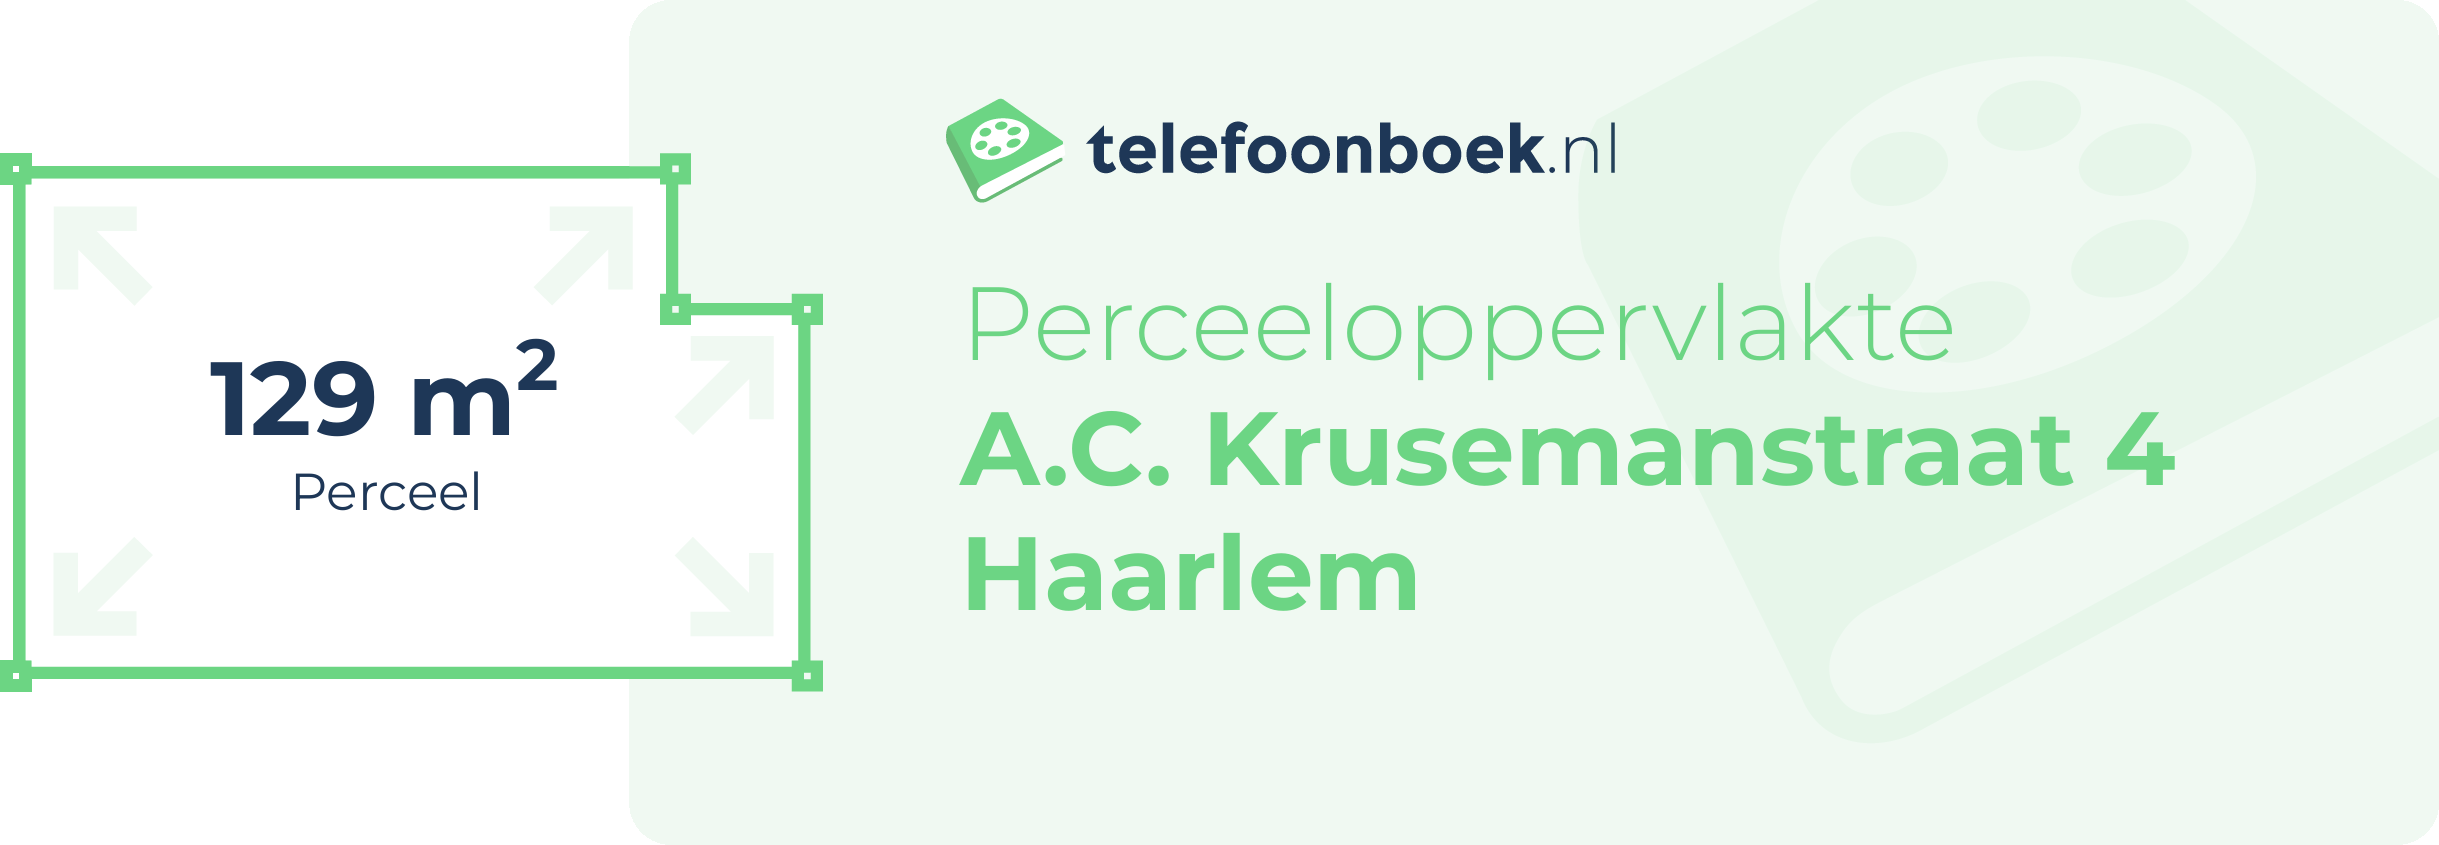 Perceeloppervlakte A.C. Krusemanstraat 4 Haarlem